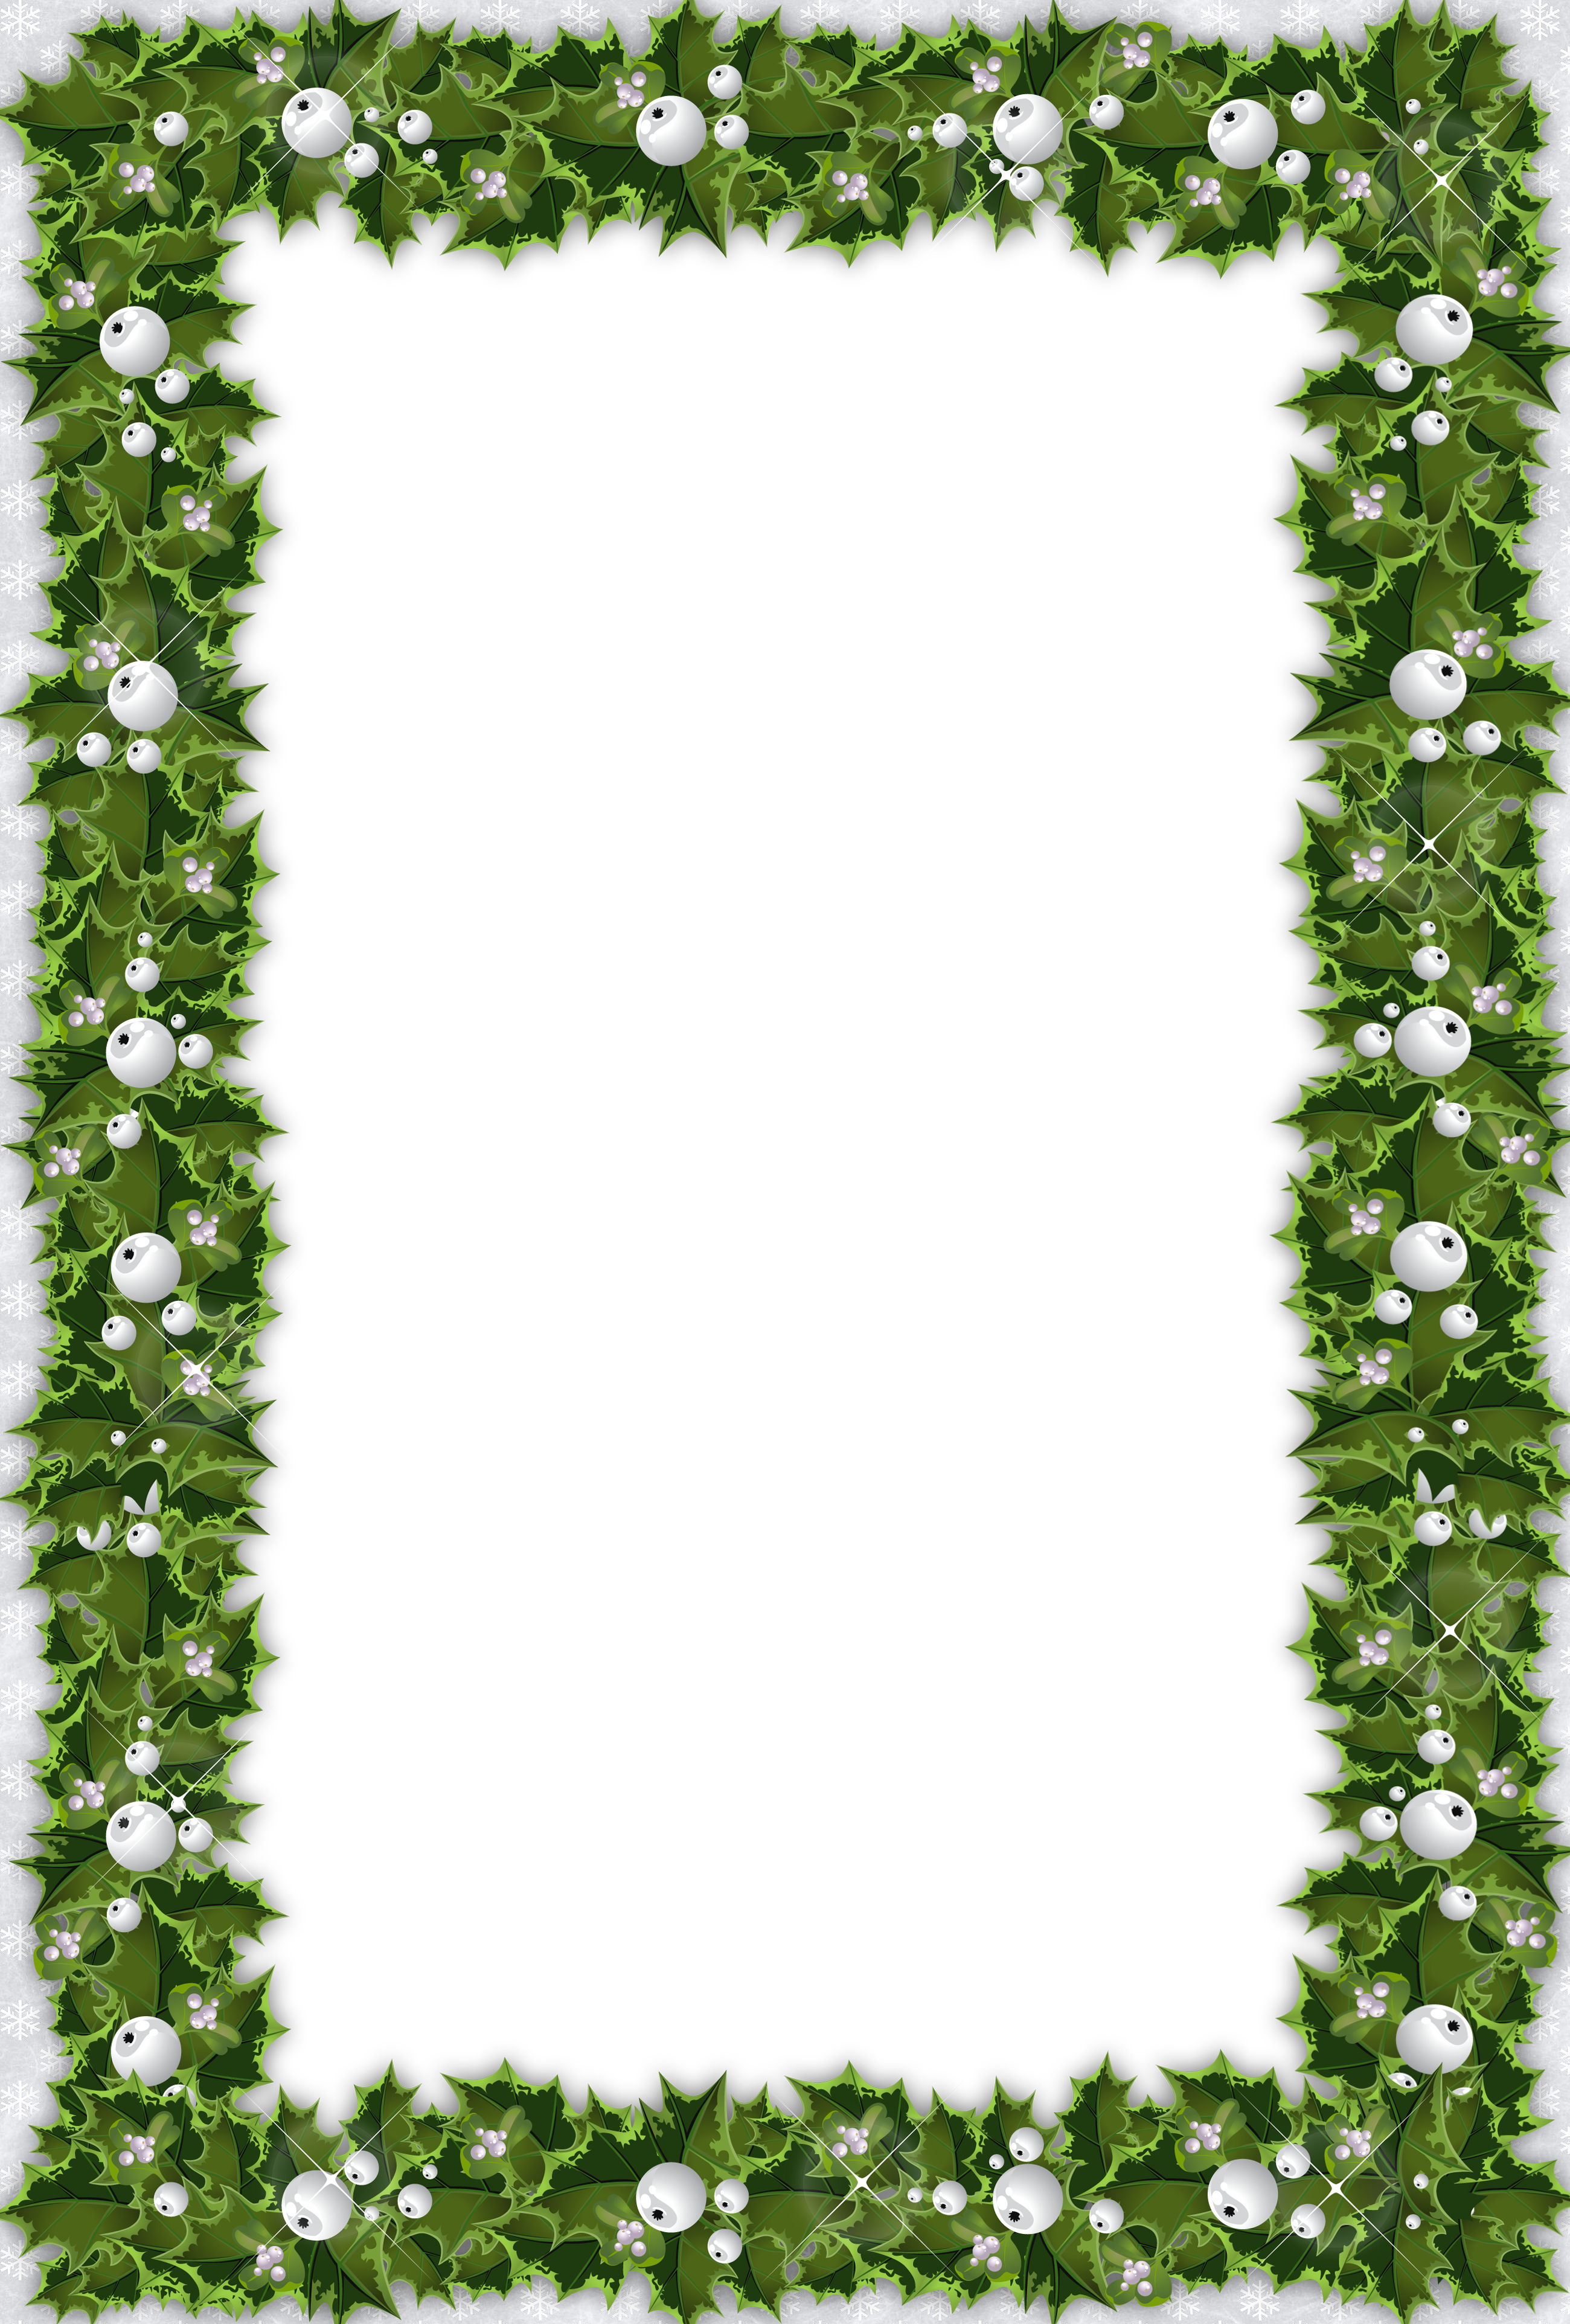 mistletoe clipart frame